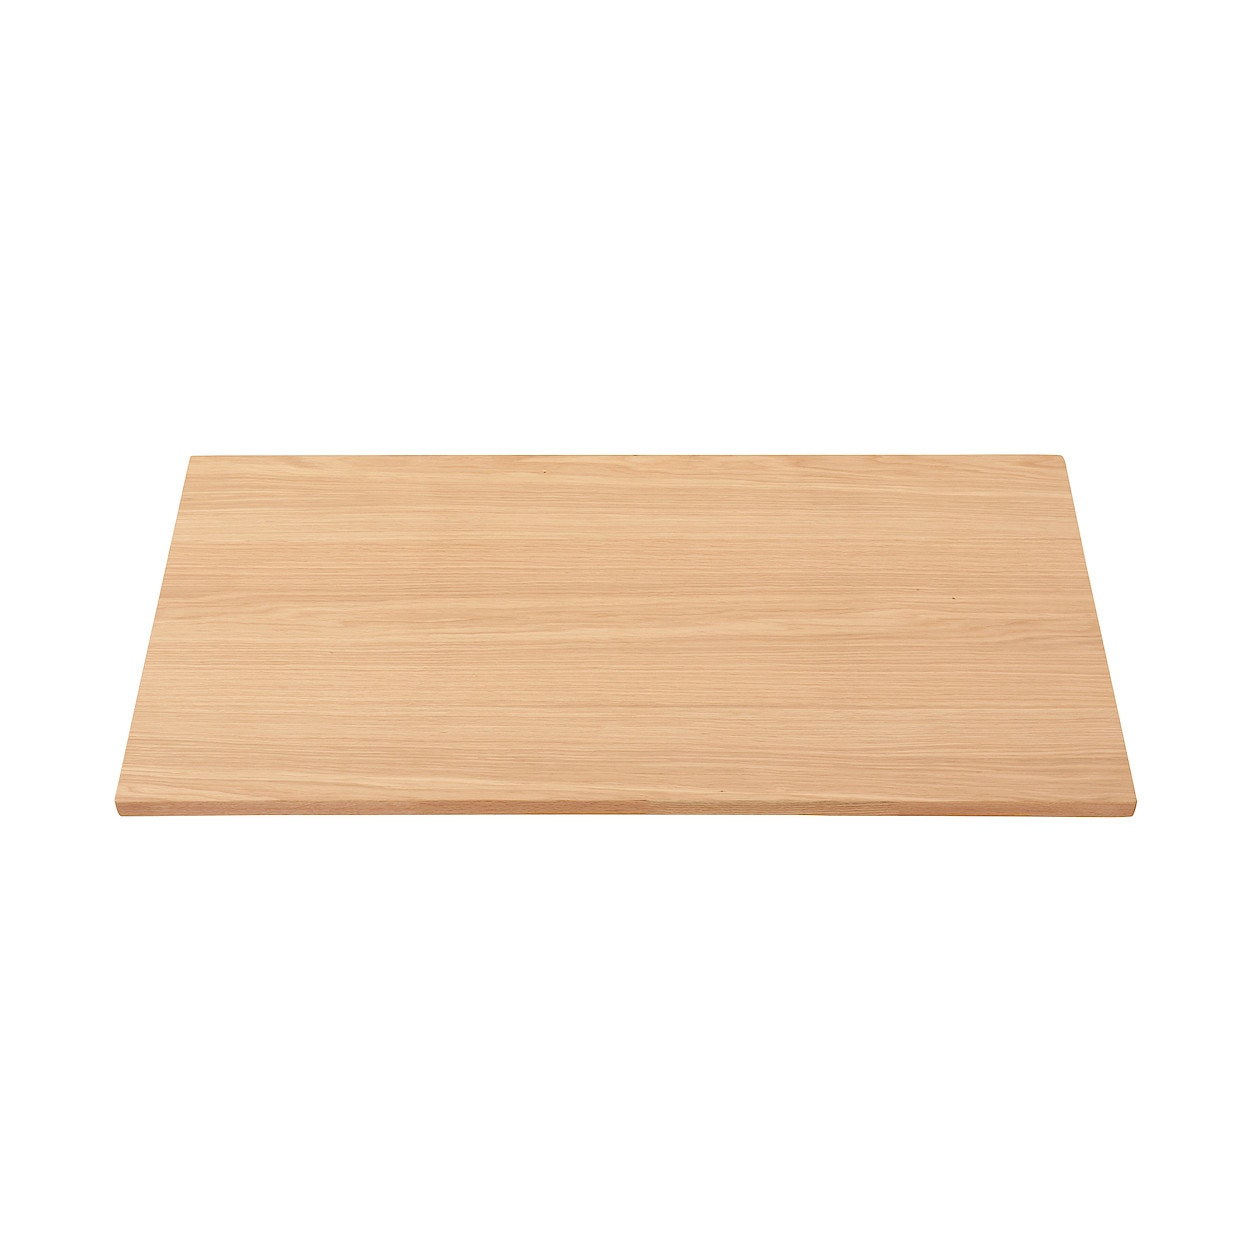 Stół systemowy - blat lity dąb 120x60cm